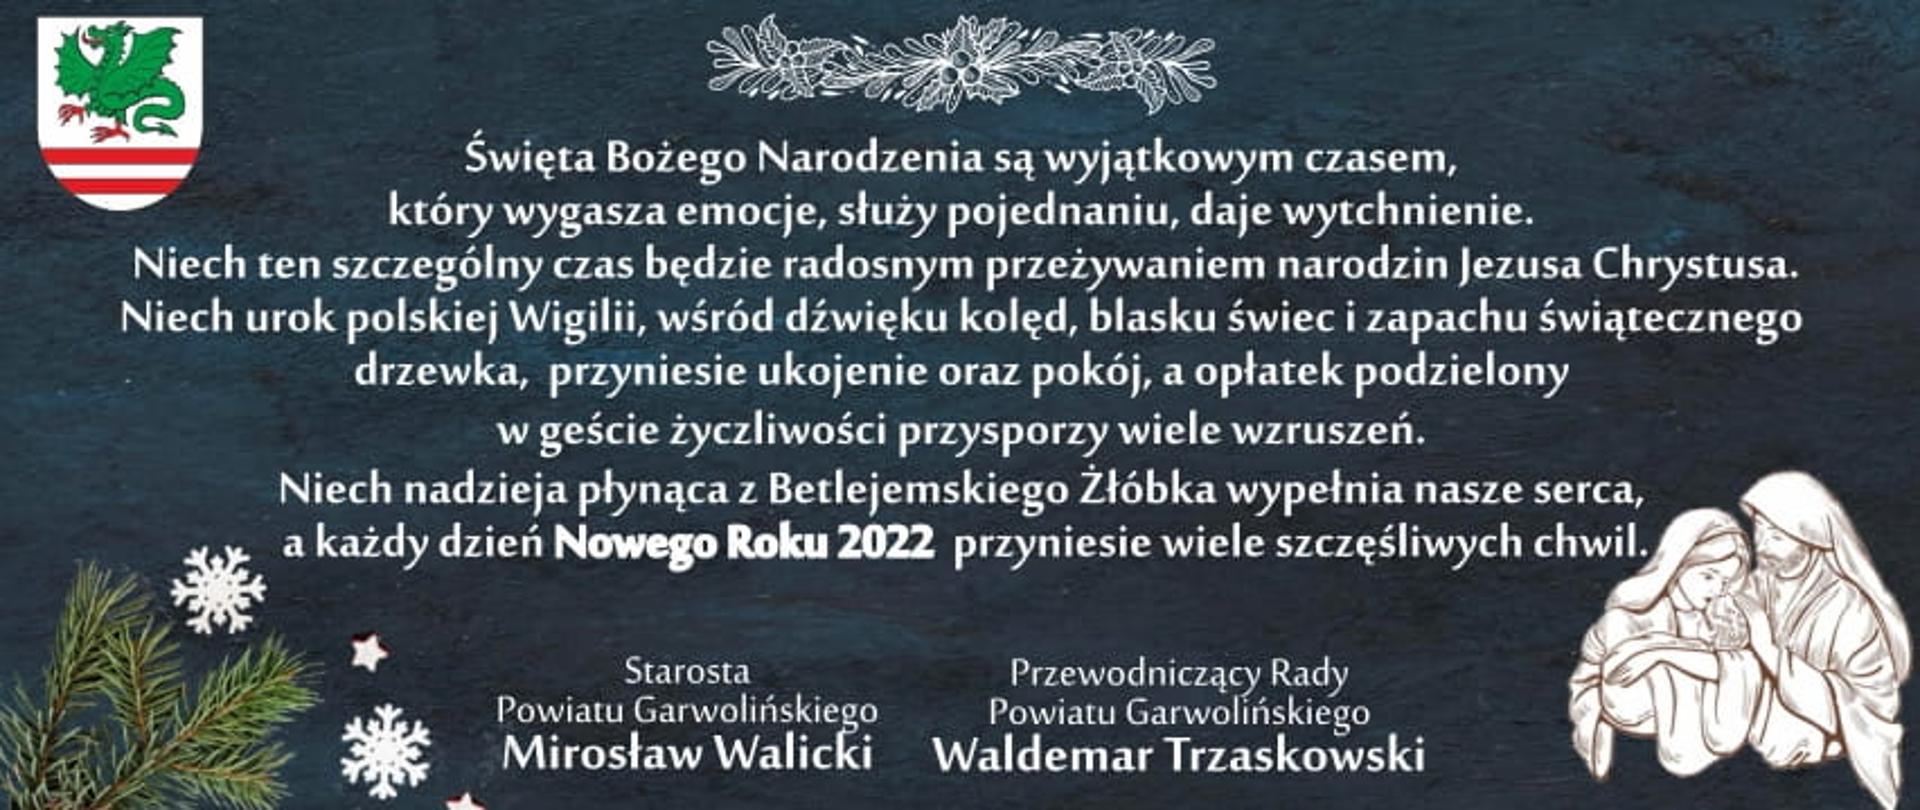 Życzenia świąteczne dla Mieszkańców Powiatu Garwolińskiego